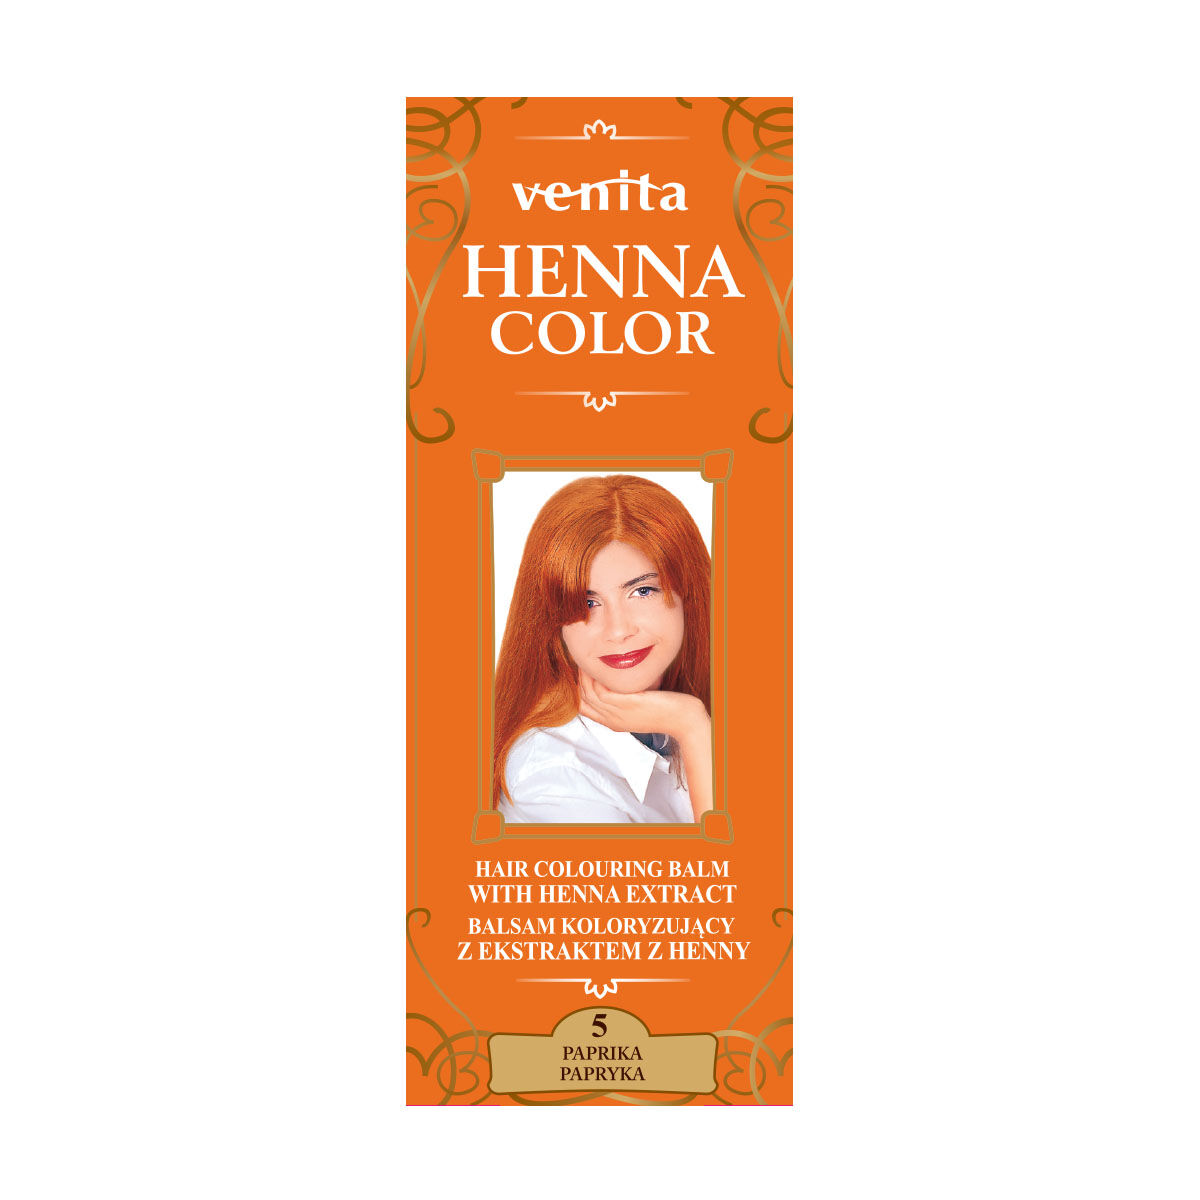 Бальзам-краска для волос 5 перцев Venita Henna Color, 75 мл